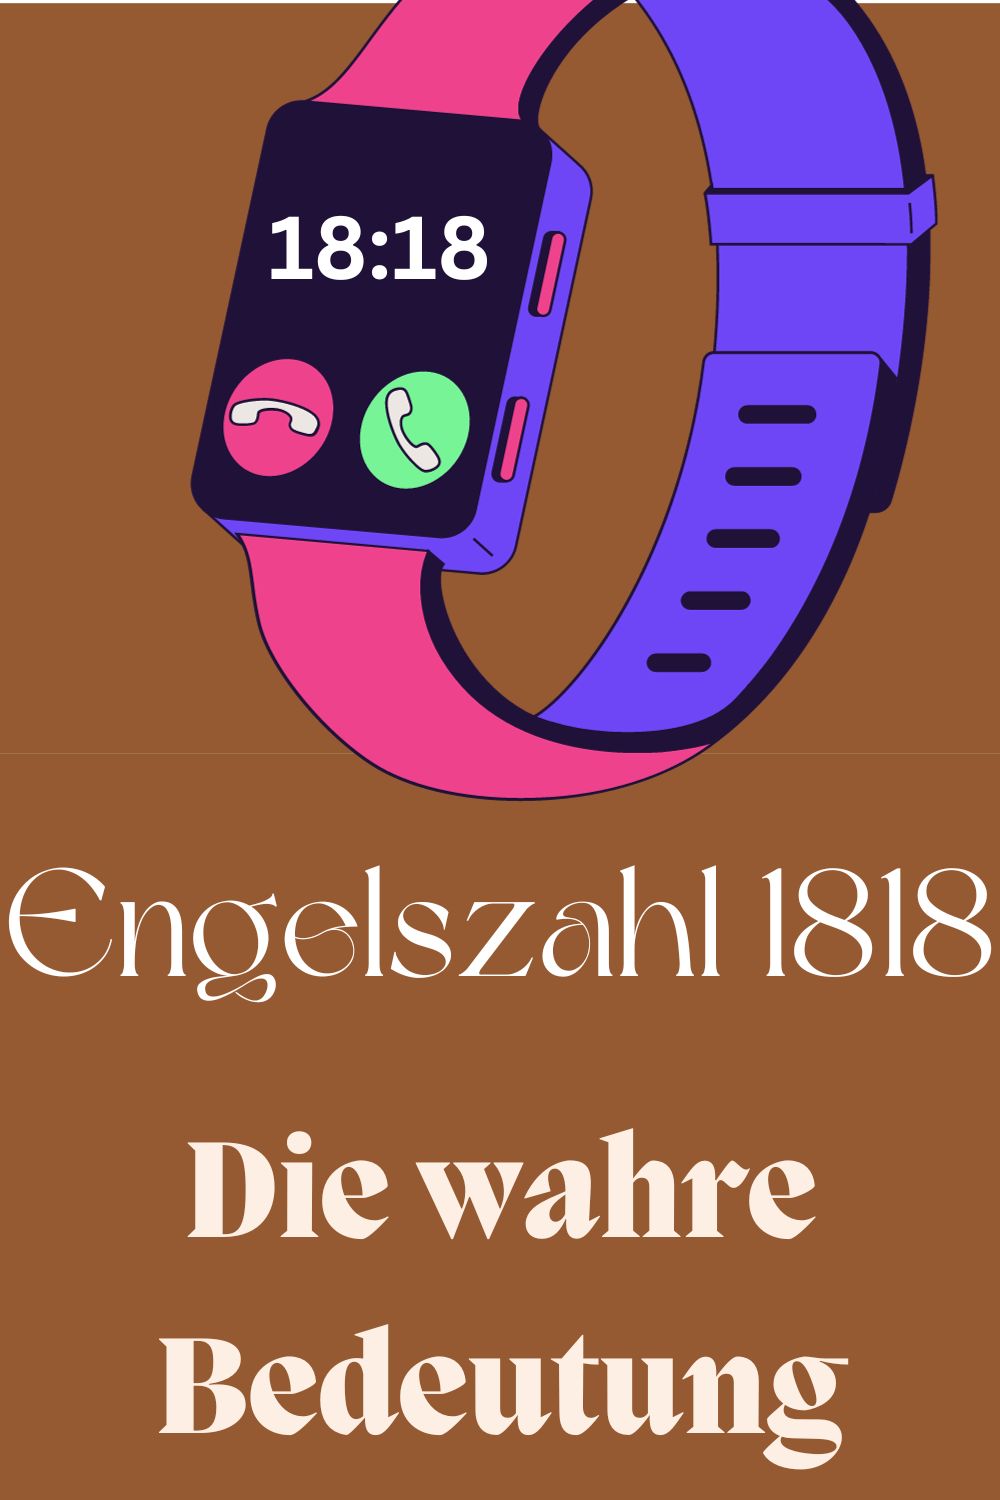 Engelszahl-1818-Die-wahre-Bedeutung